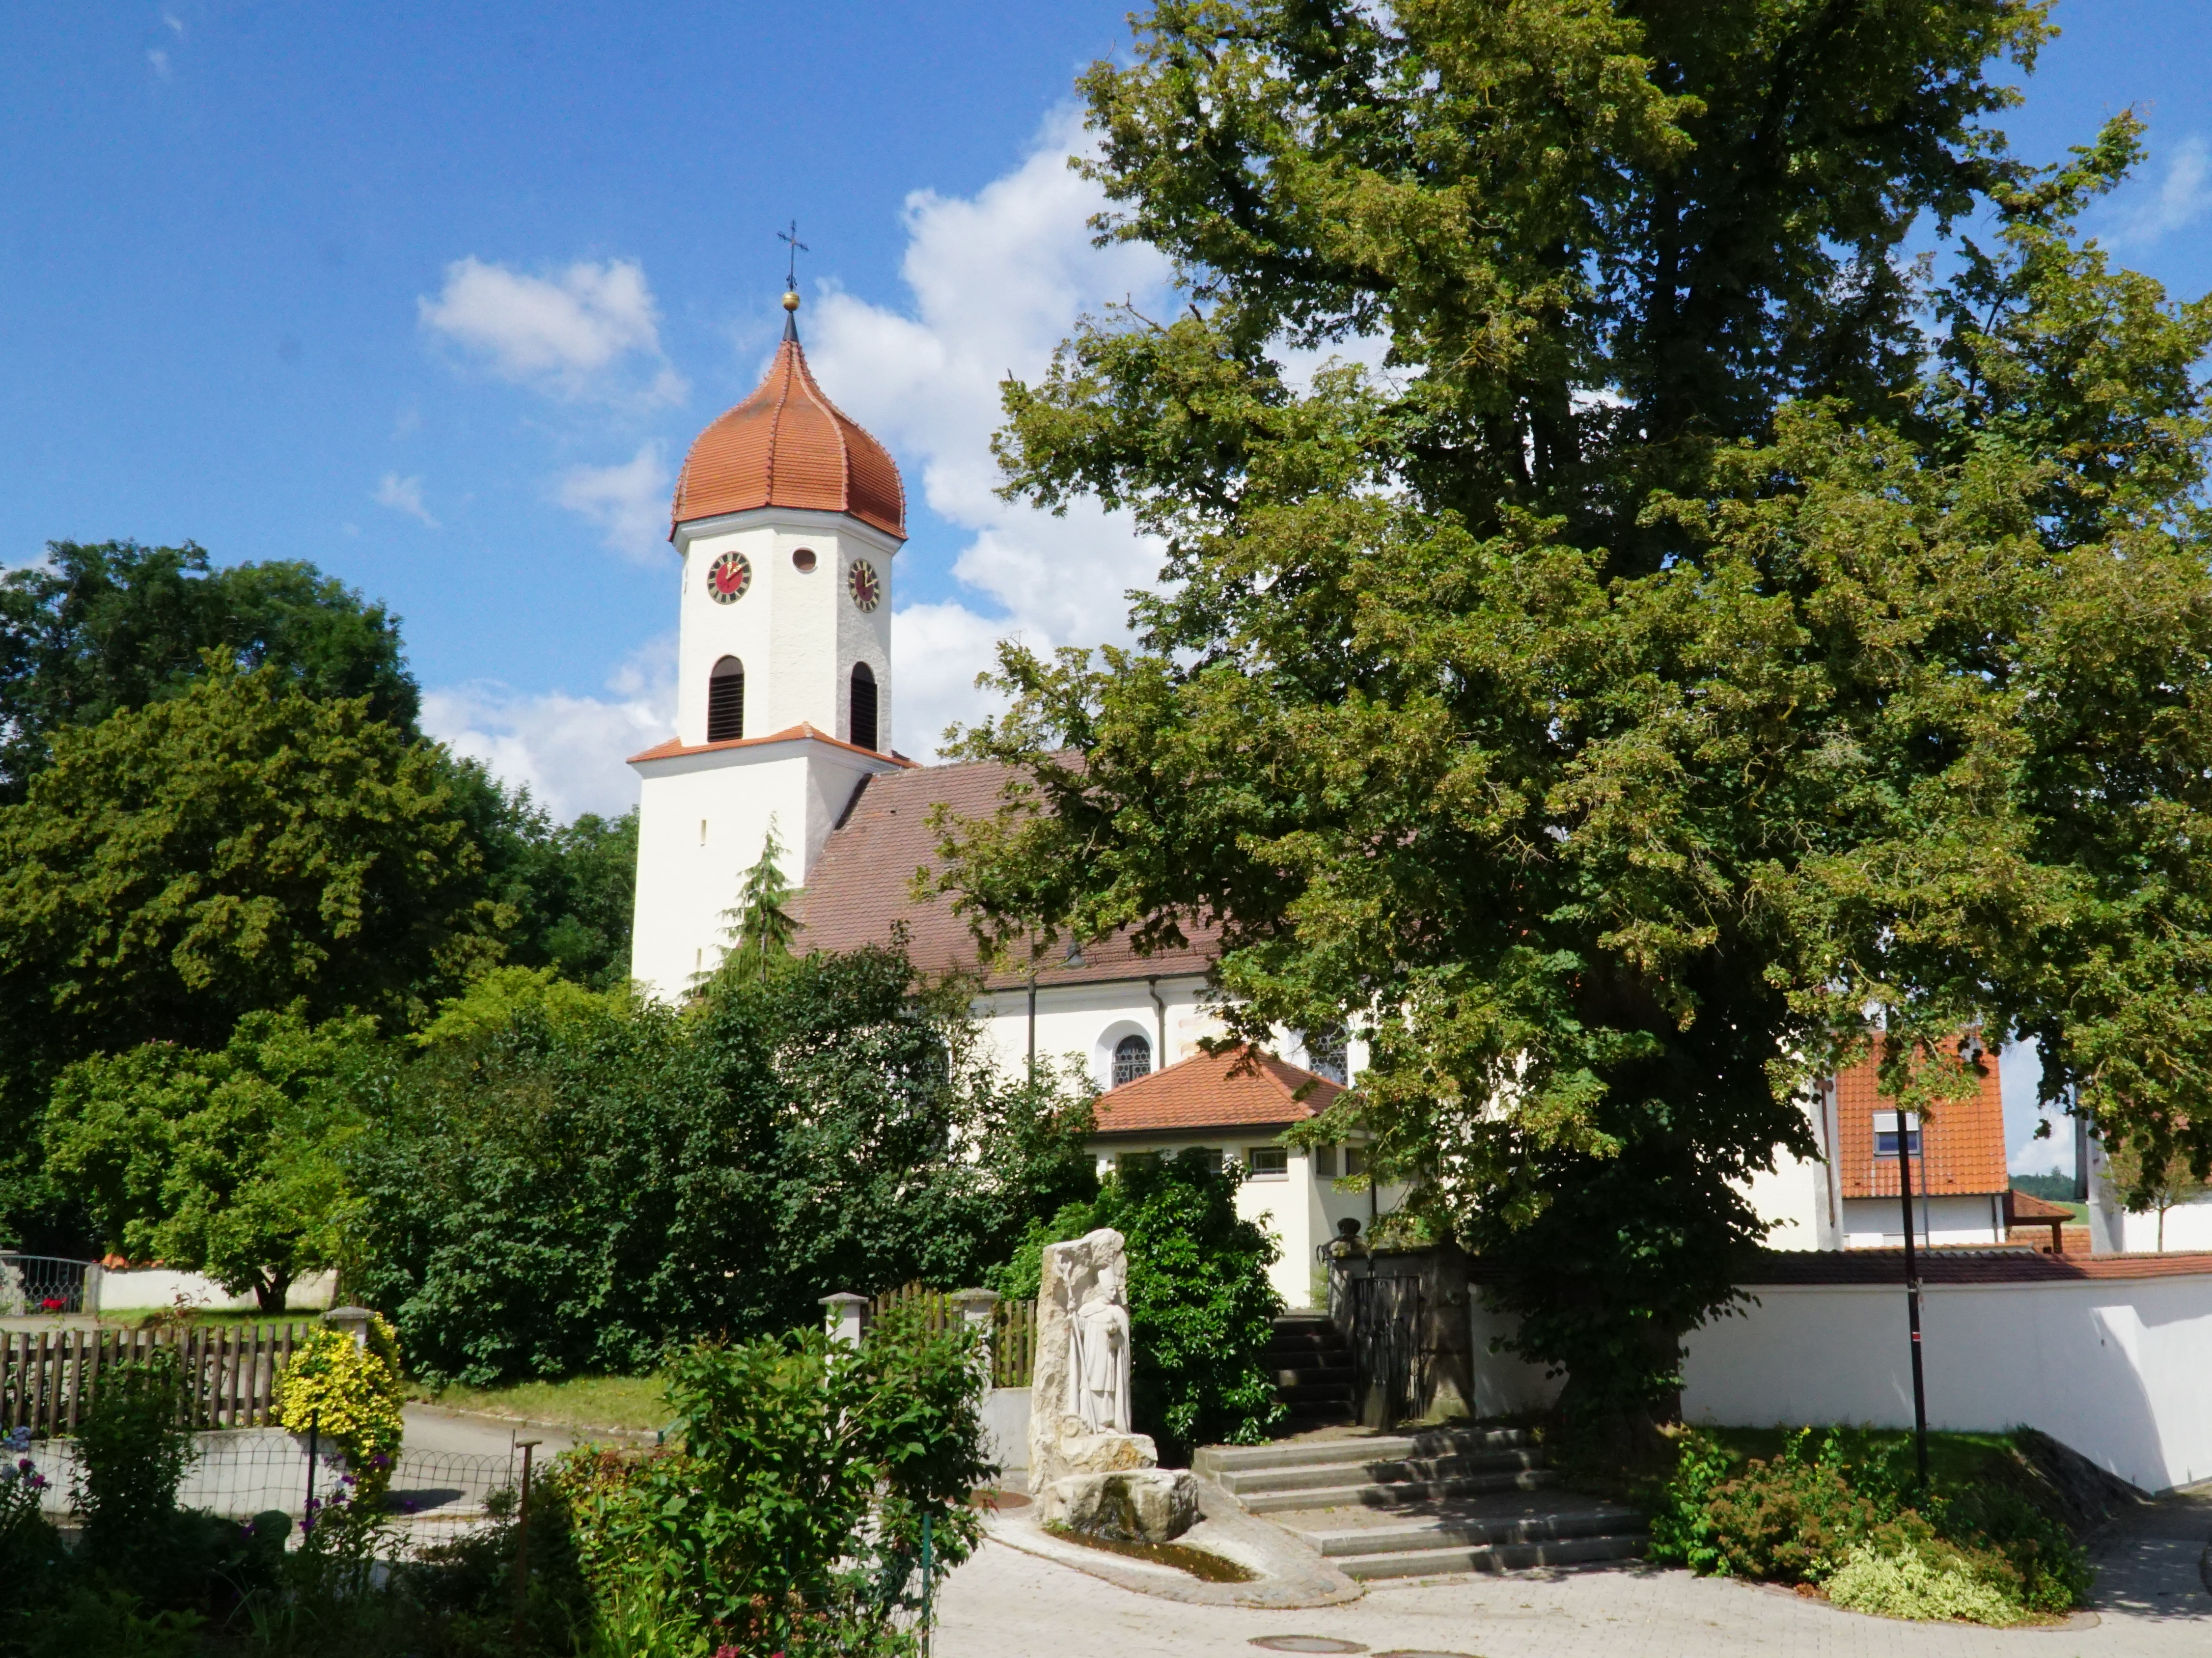  Kirche Uigendorf Außenansicht 